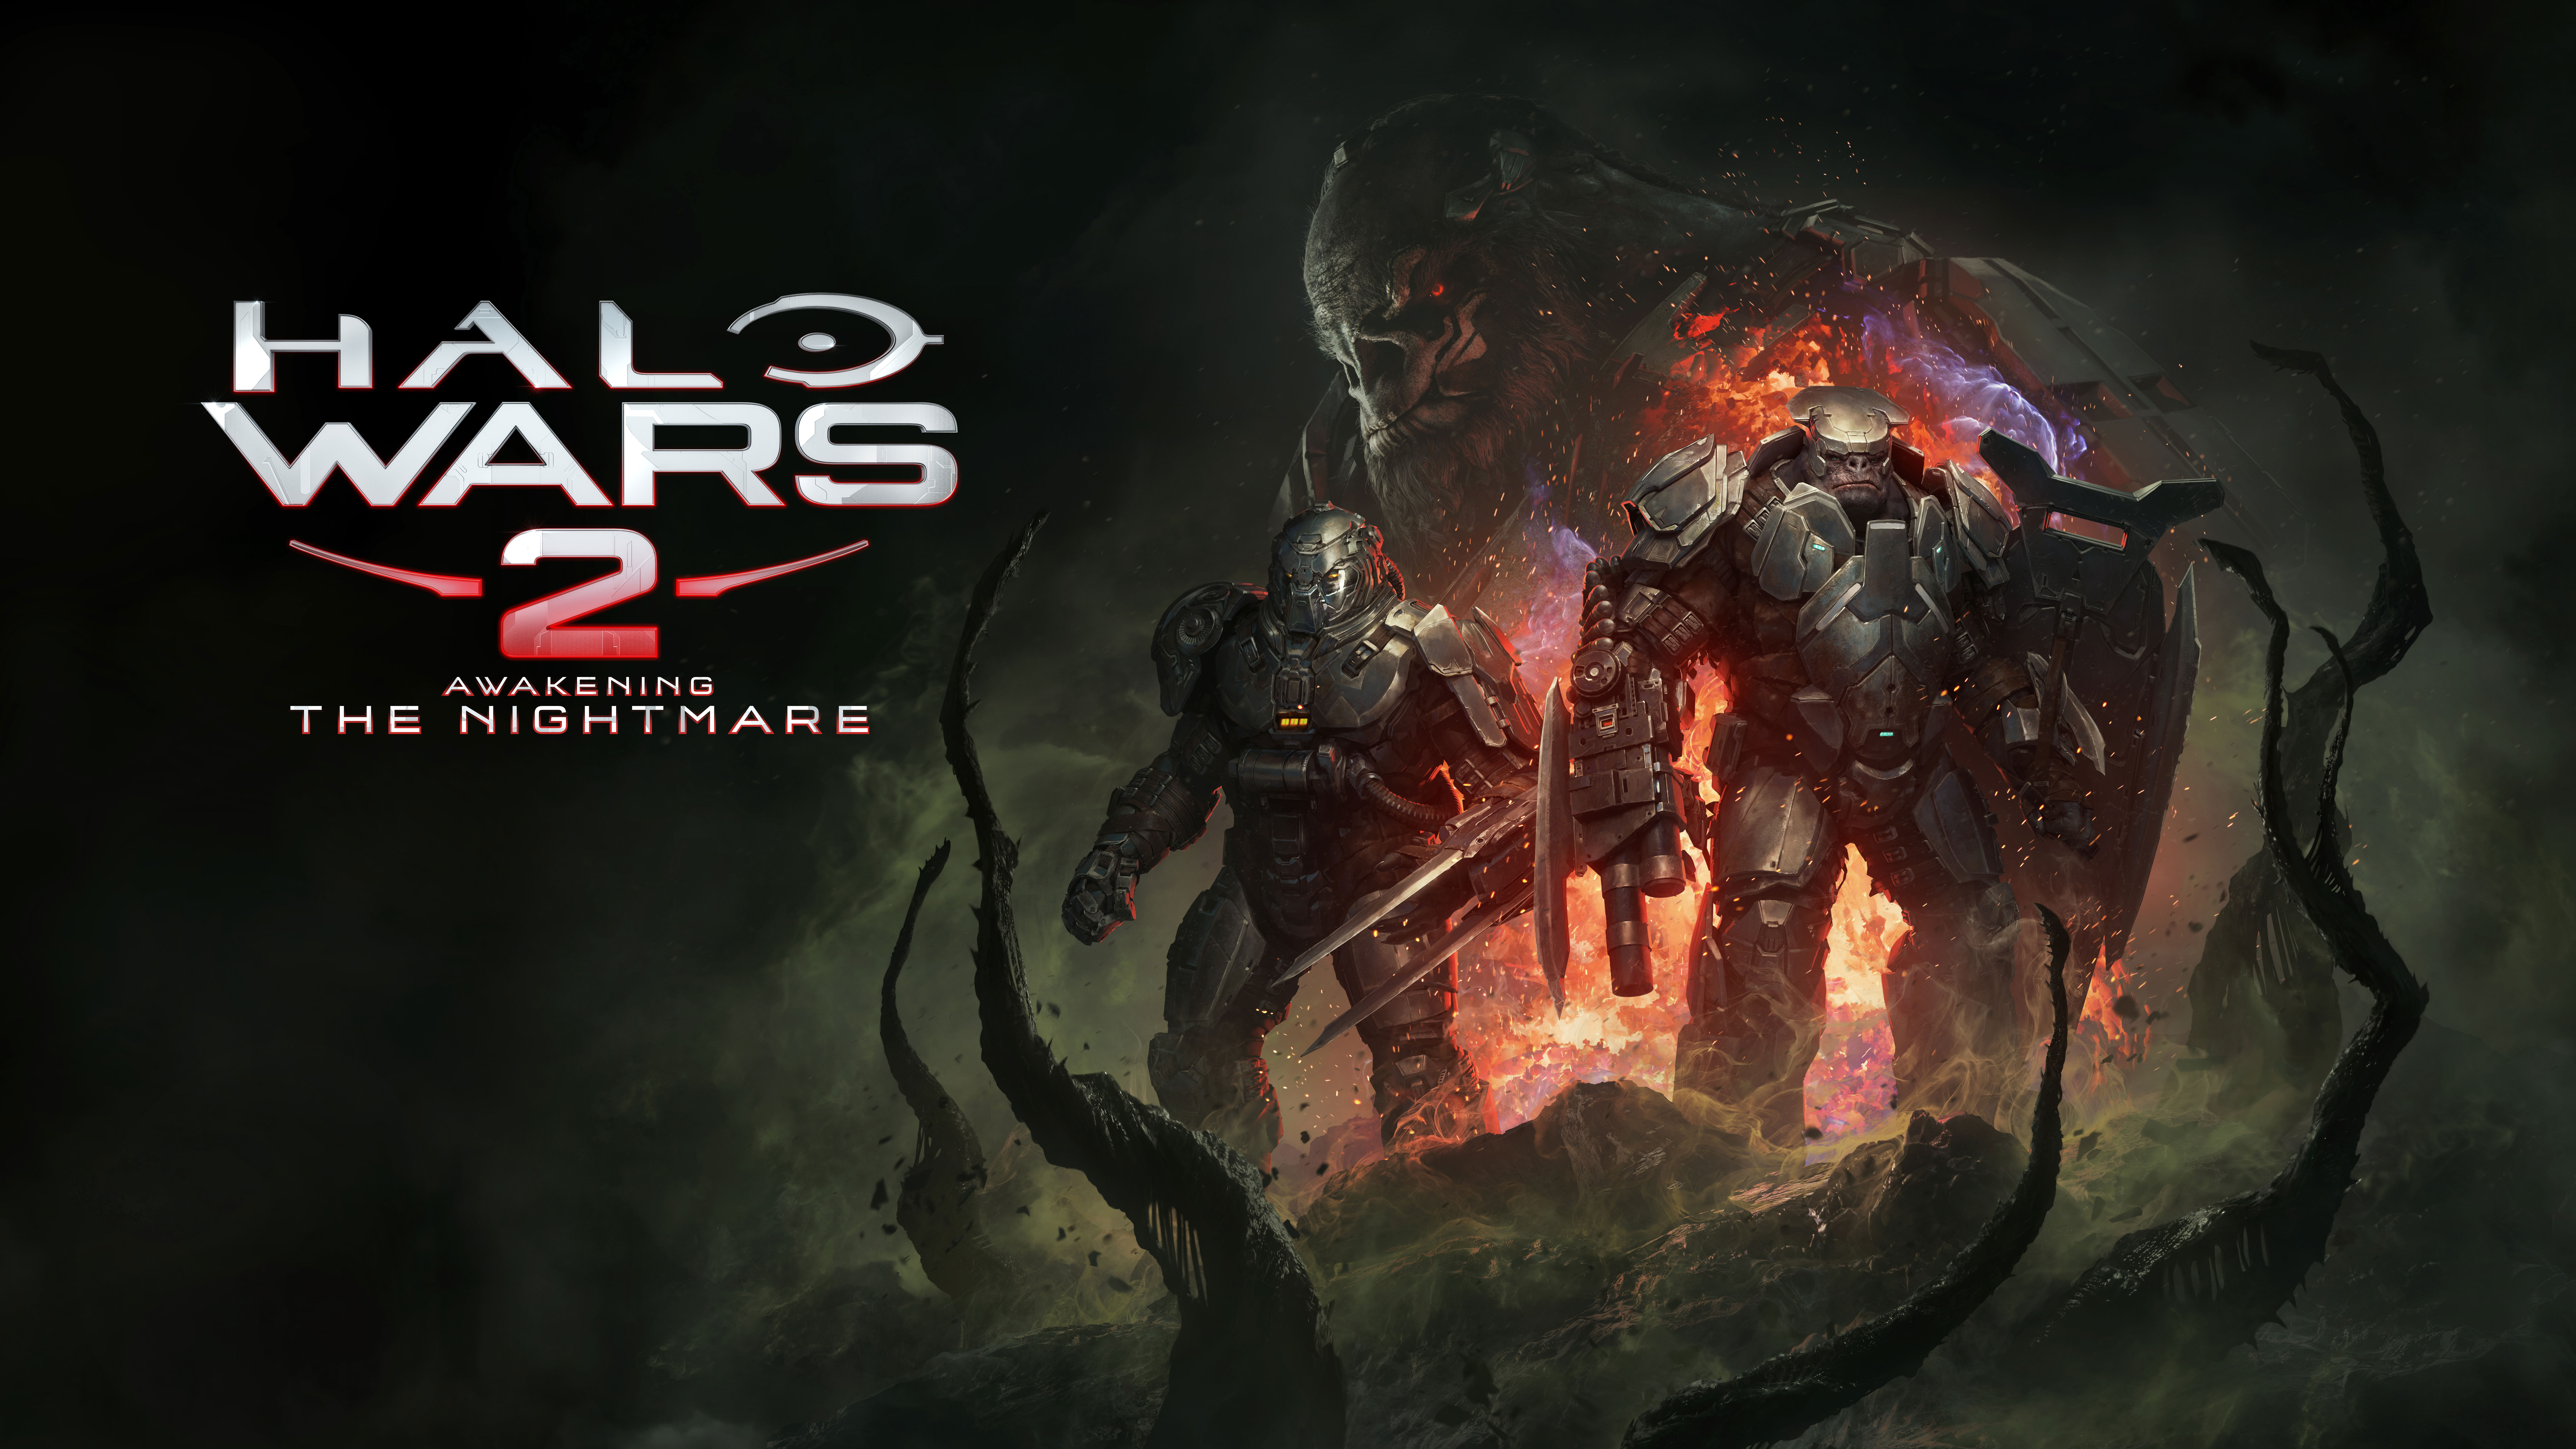 halo wars 2 fondo de pantalla,juego de acción y aventura,juego de pc,cg artwork,oscuridad,diseño gráfico